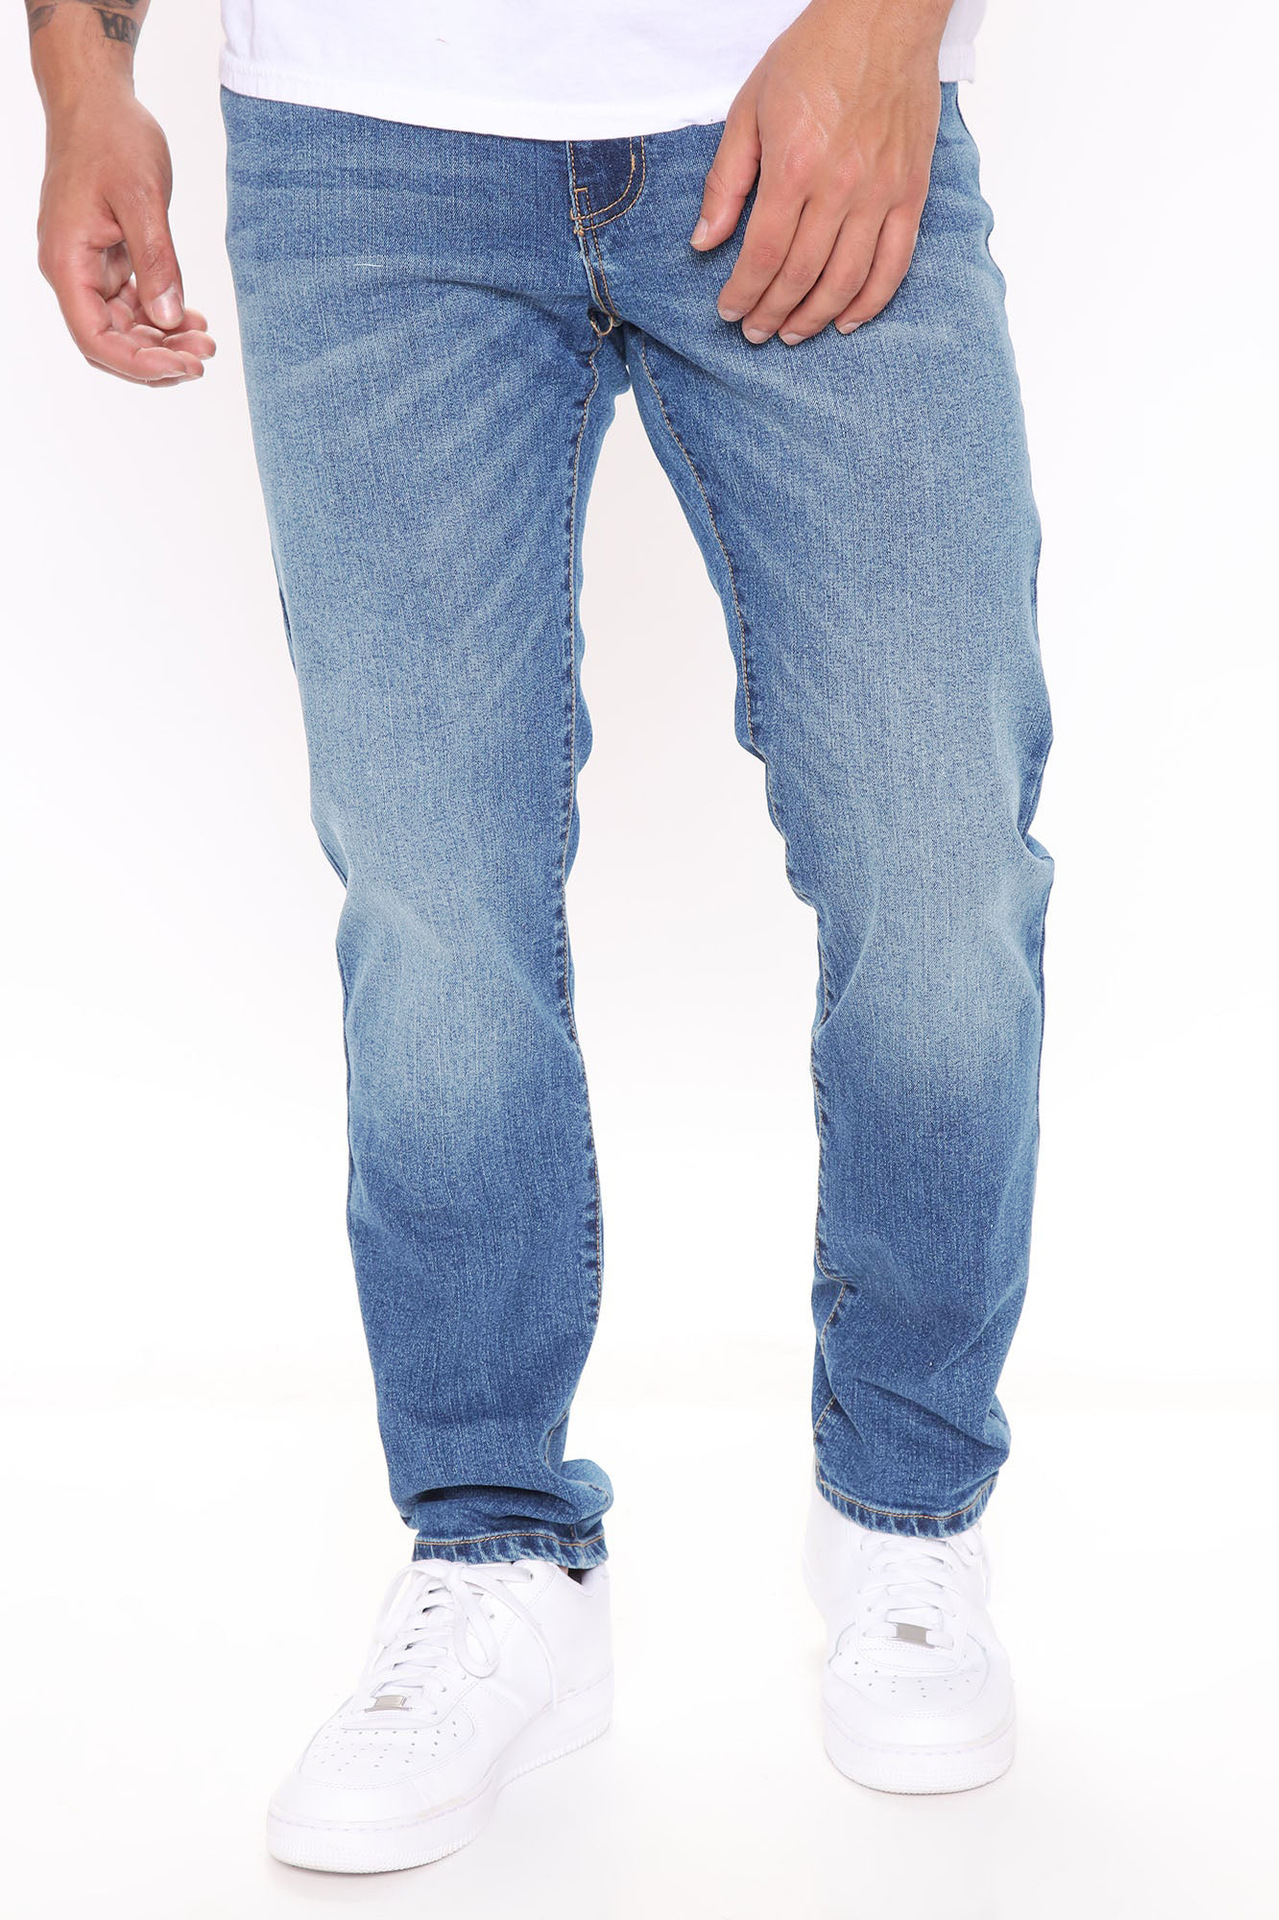 Men's Designer Jeans - Black Jeans, Blue Jeans & More | Ksubi ++